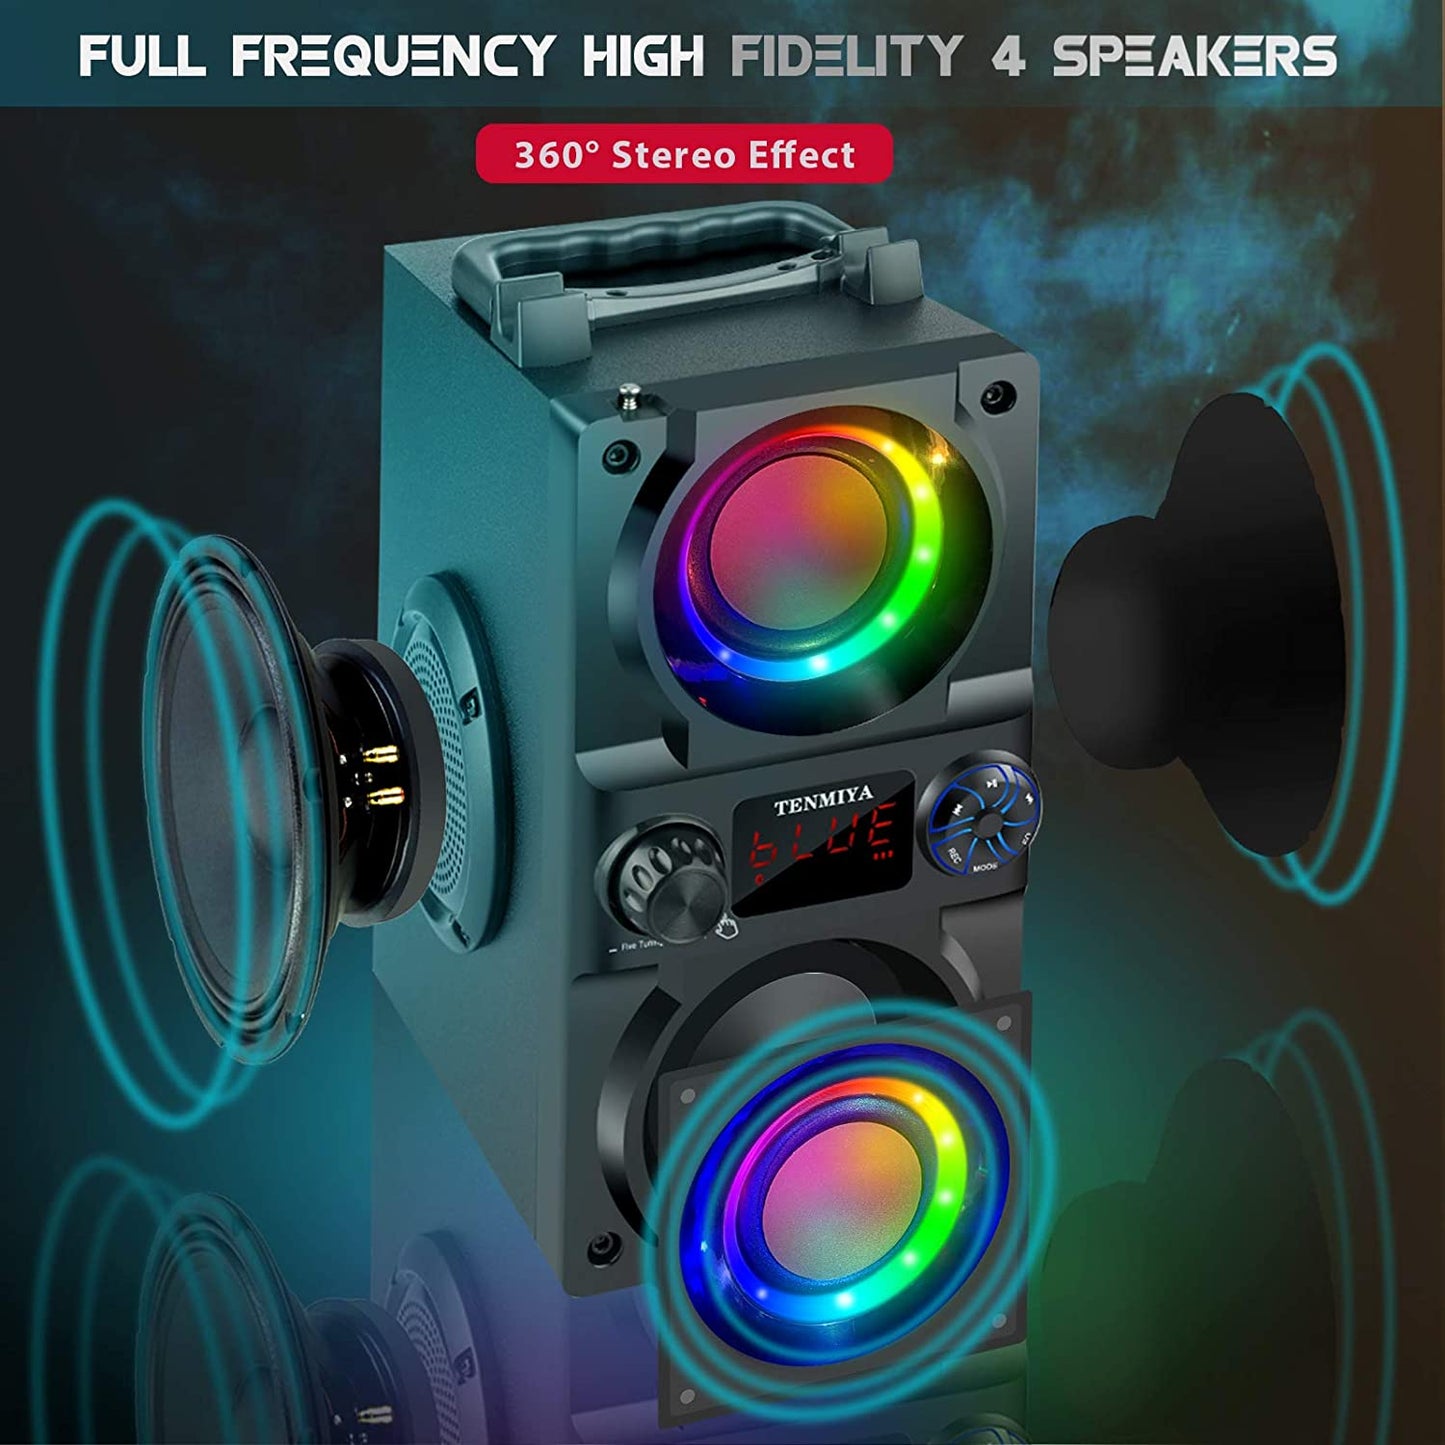 Portable Wireless Bluetooth Speaker, 40W (60W Peak),Double Subwoofer Heavy Bass, Bluetooth 5.0